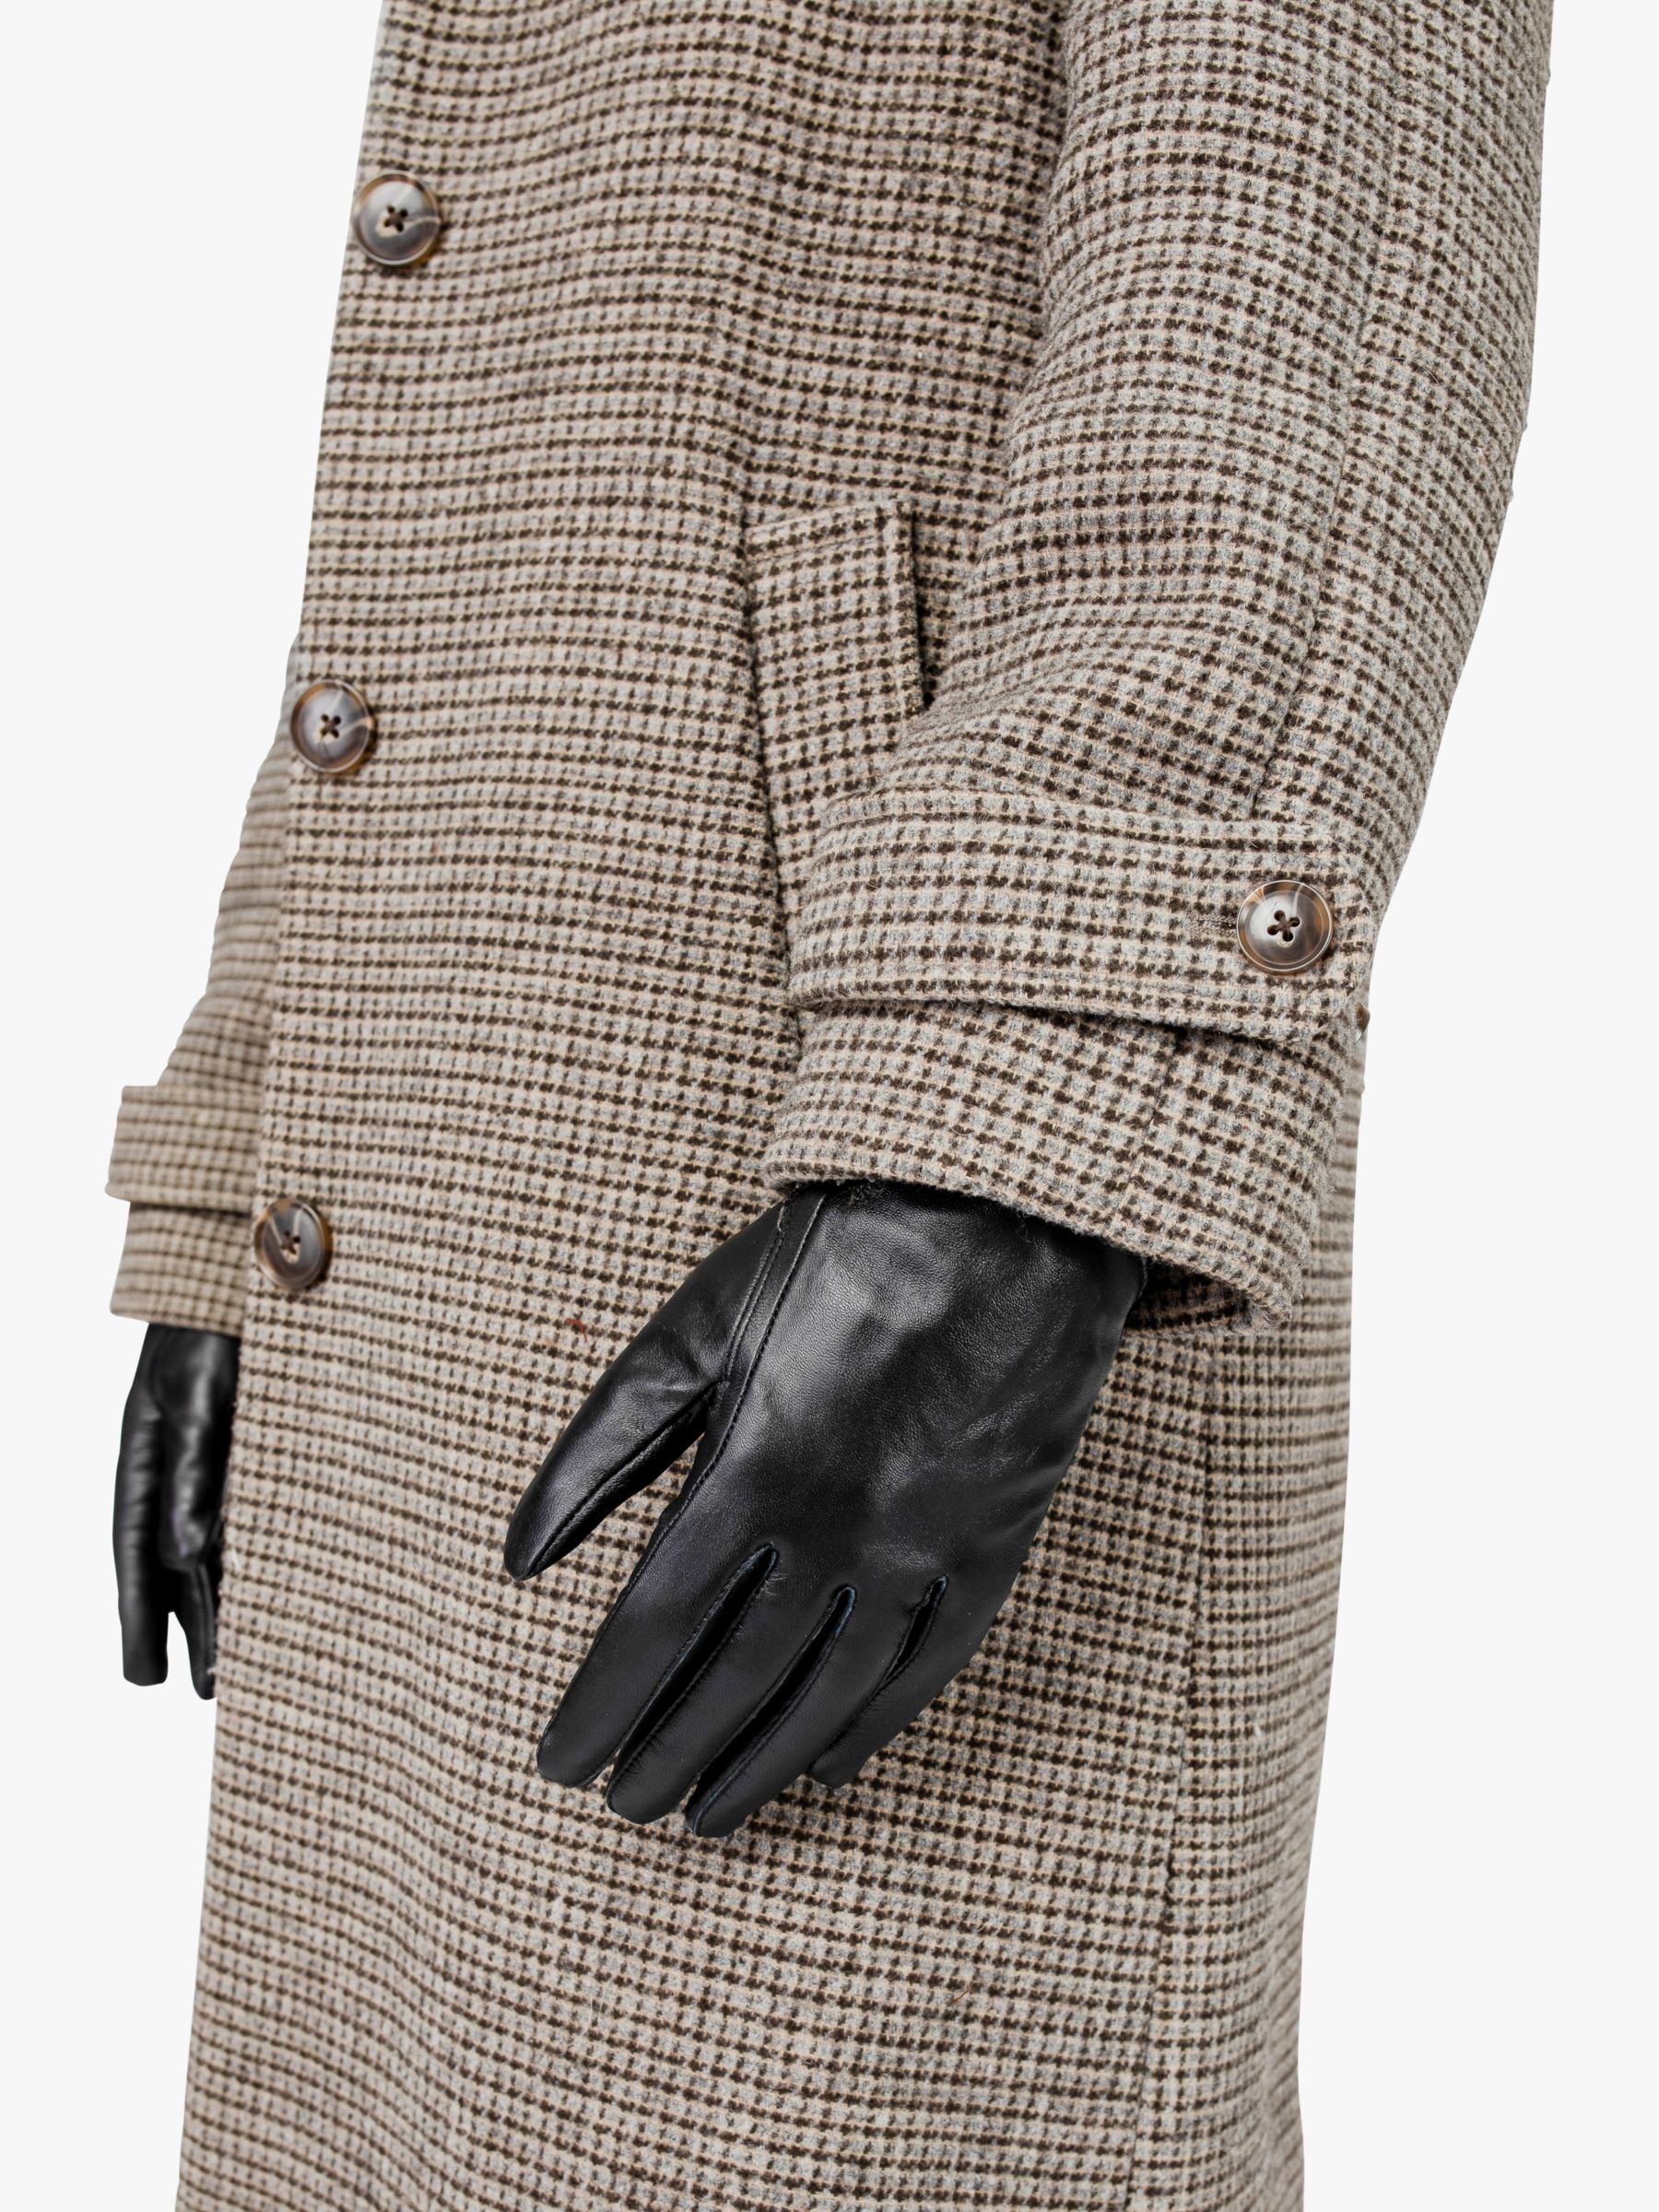 Bloom & Bay Carbis Leather Gloves, Black, S-M